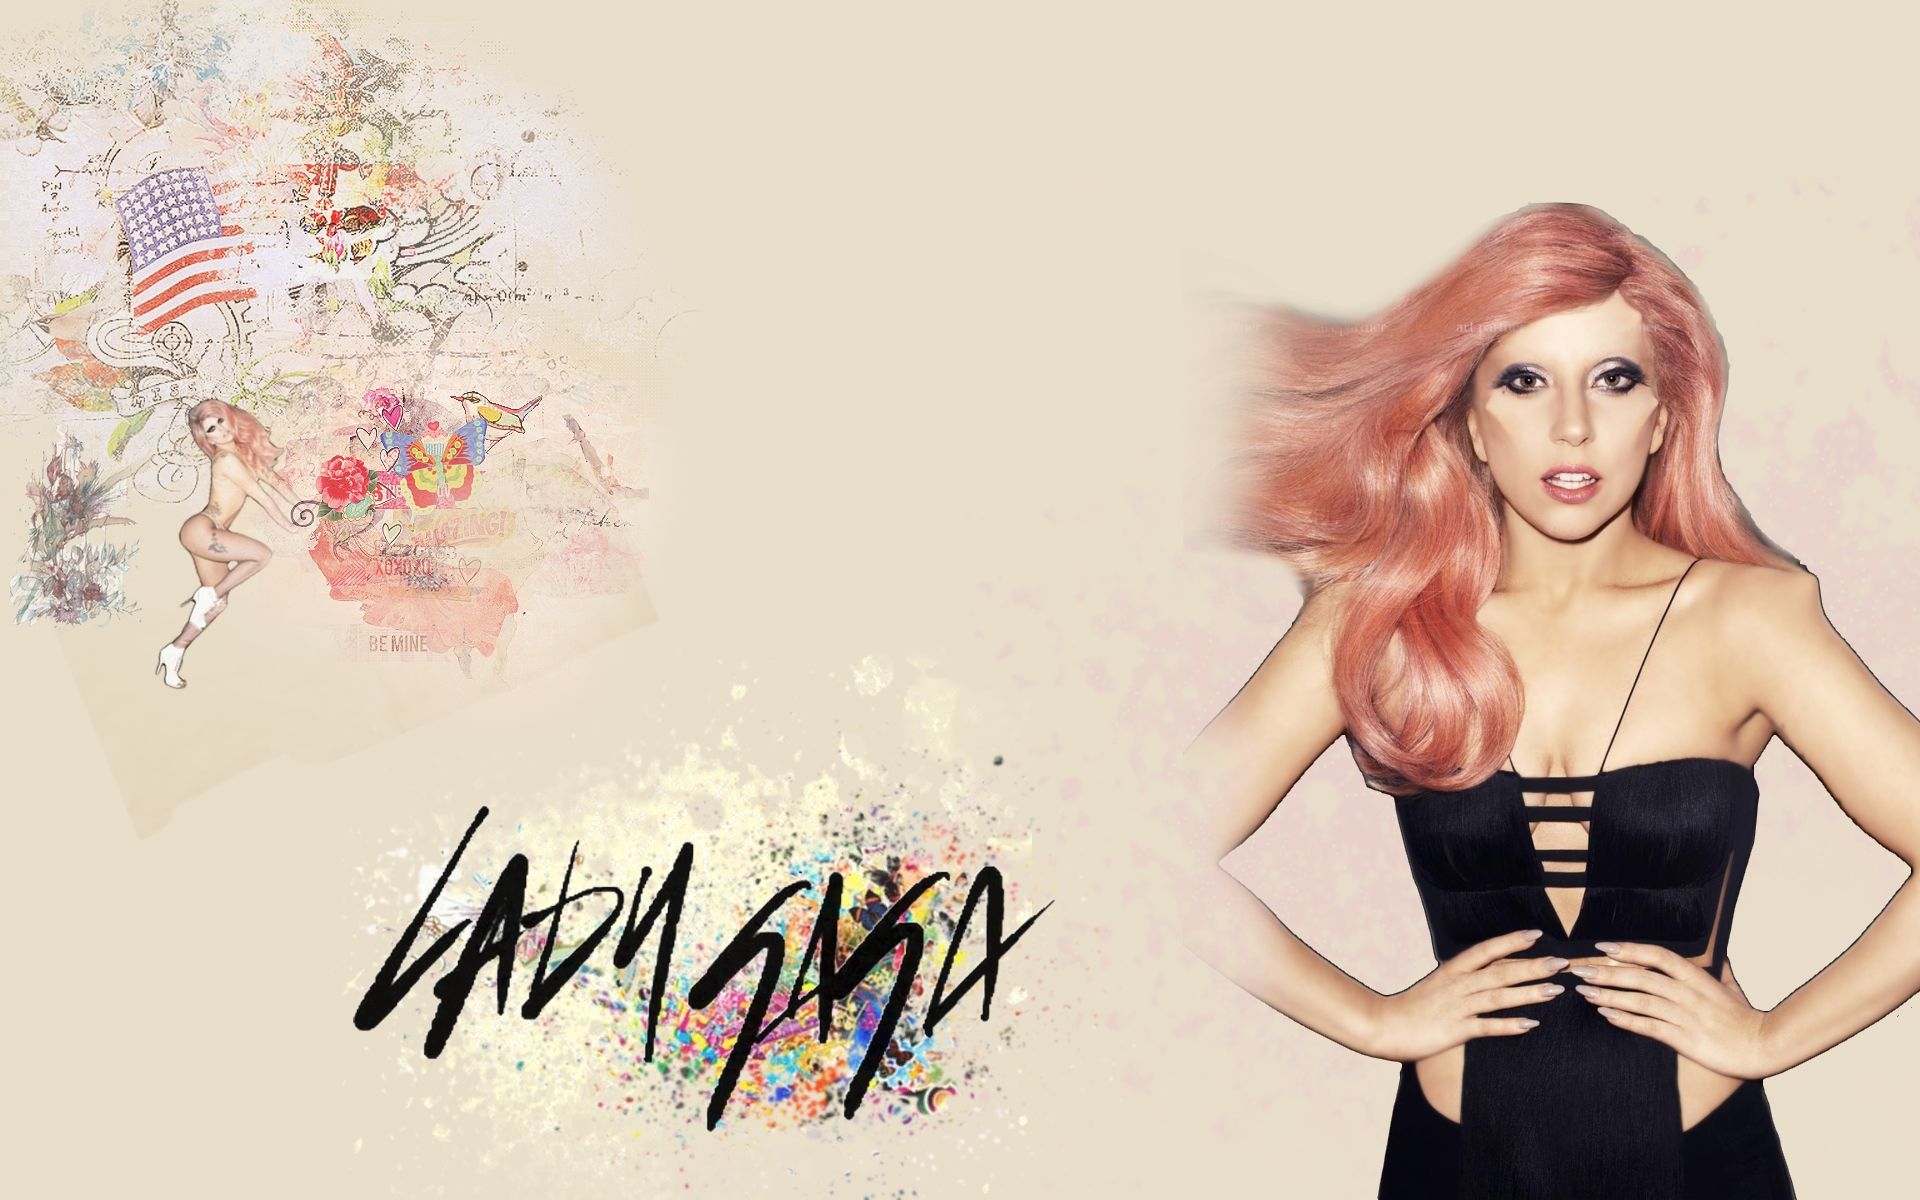 Lady Gaga Wallpaper 2 by Justi26 on DeviantArt